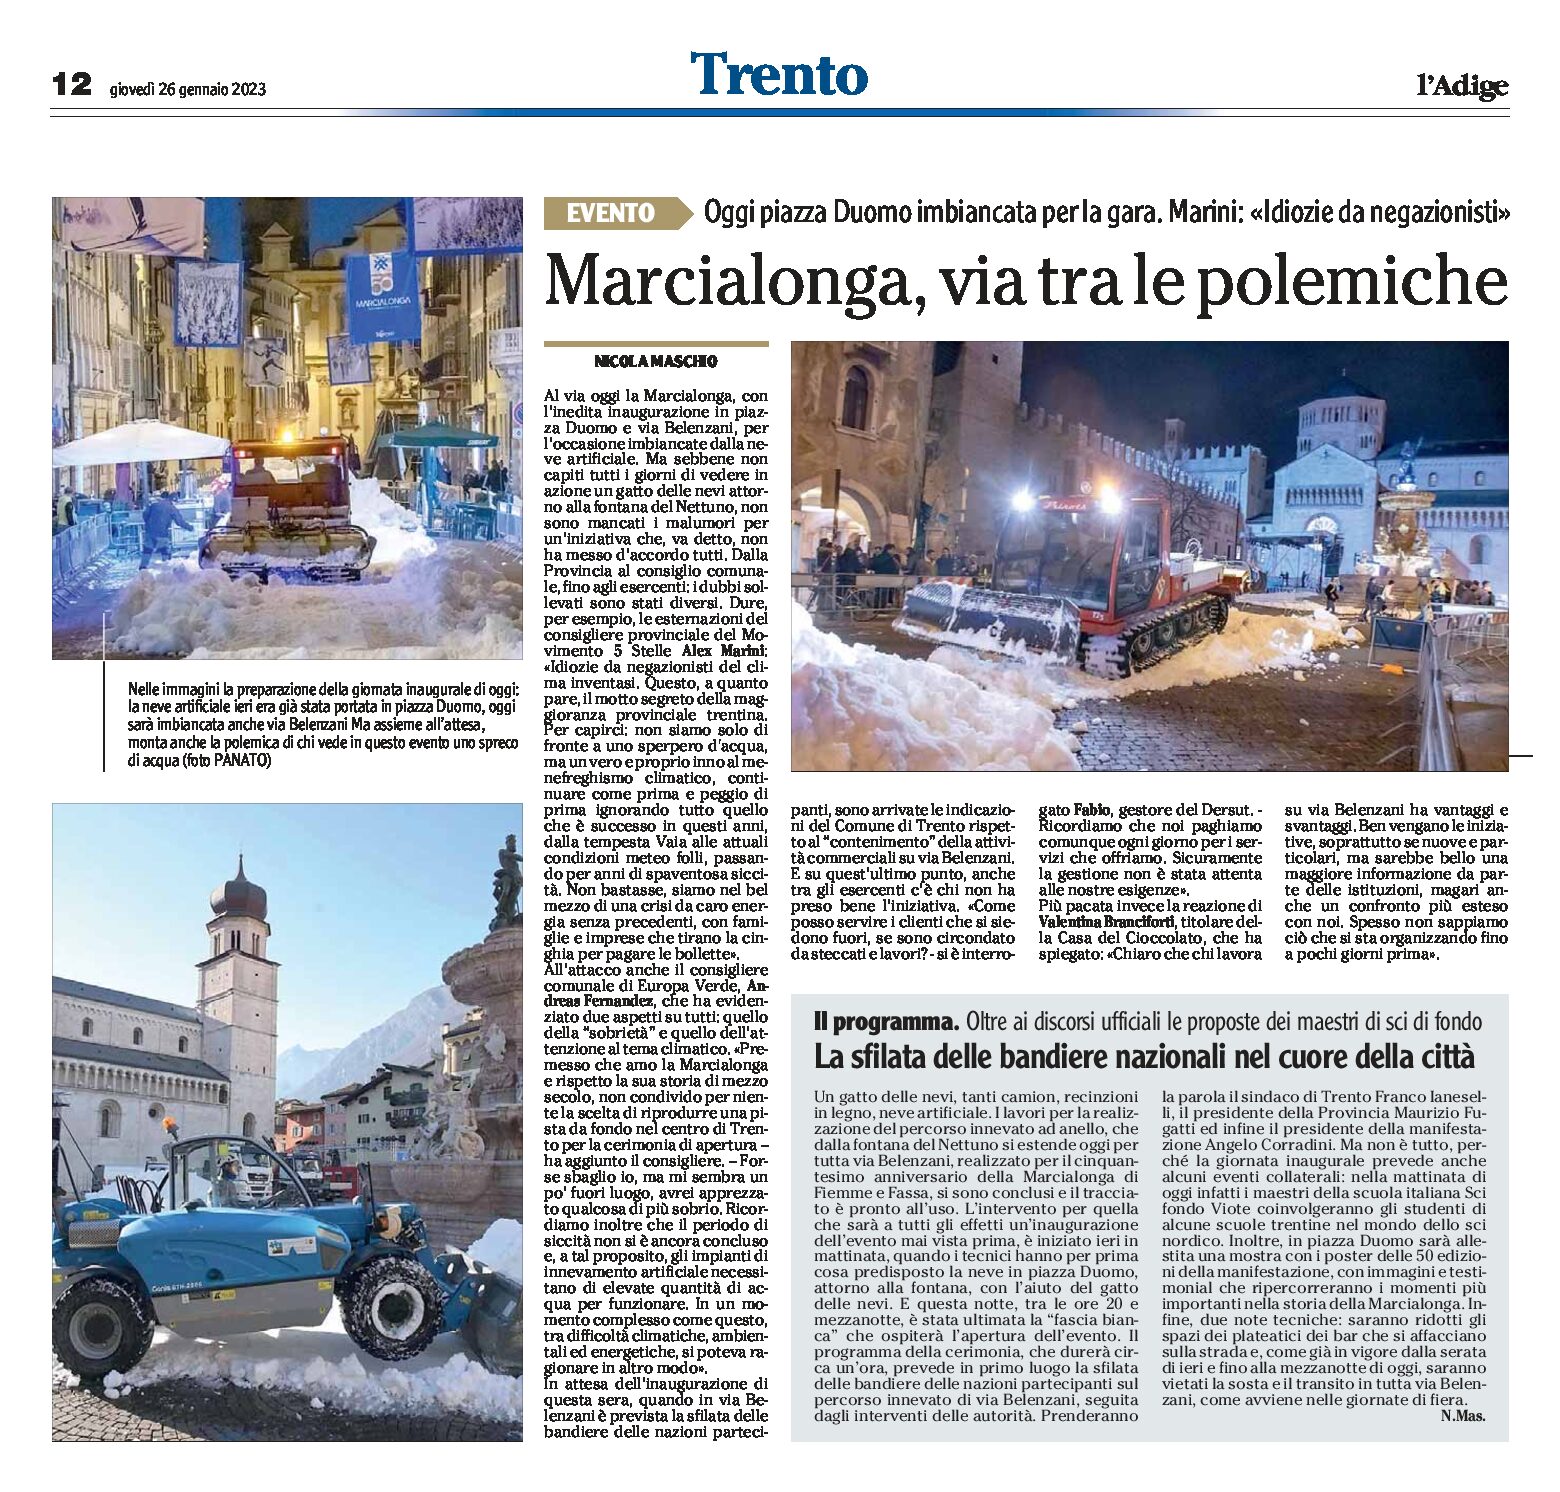 Trento, Marcialonga: piazza Duomo imbiancata per la gara, via tra le polemiche